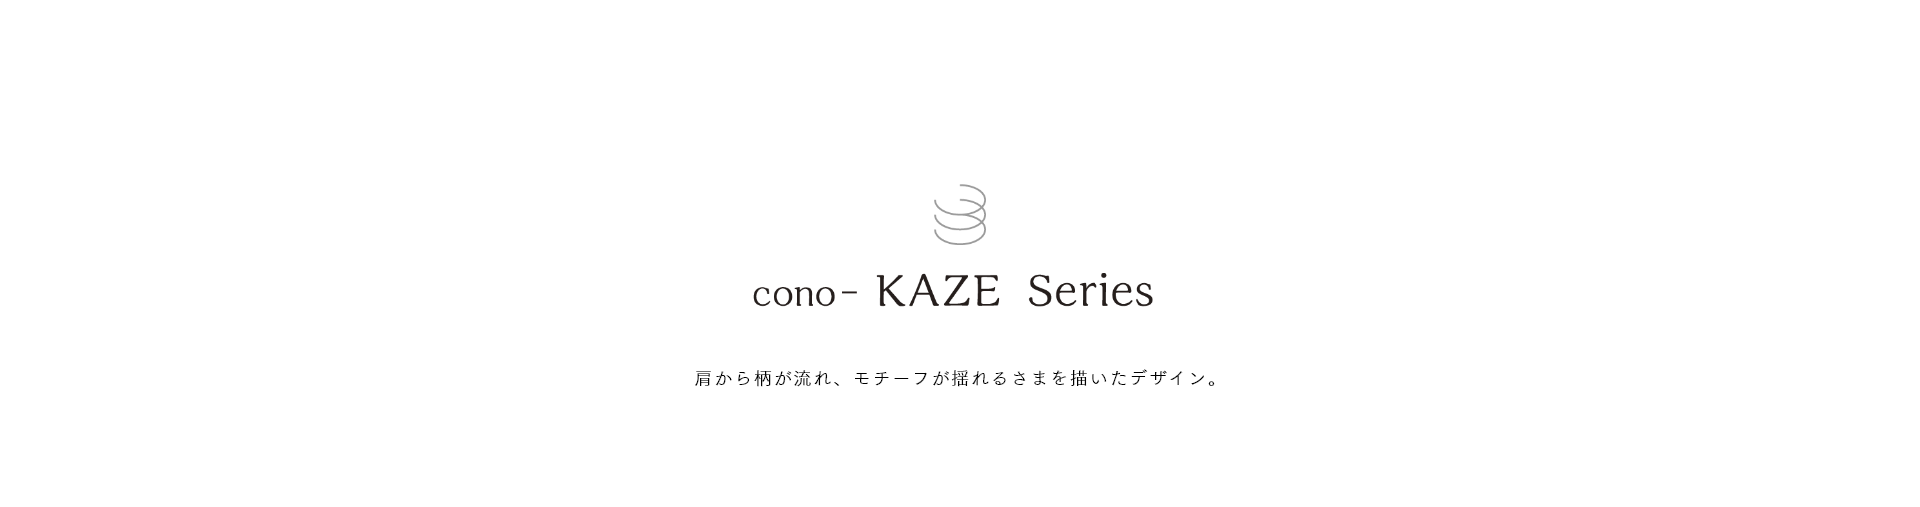 cono-KAZE